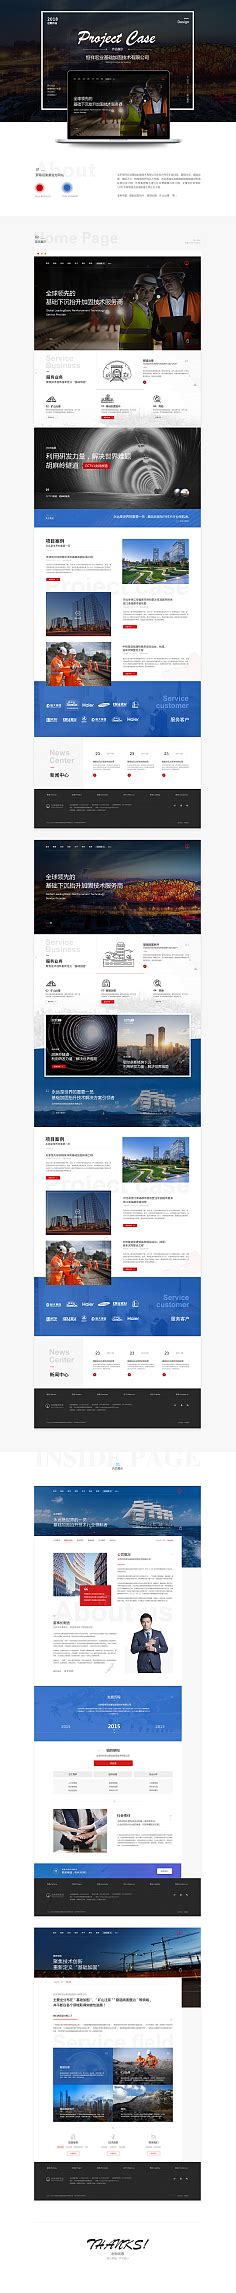 中文企业官网（优质）-花瓣网|陪你做生活的设计师 | CN用户体验设计平台